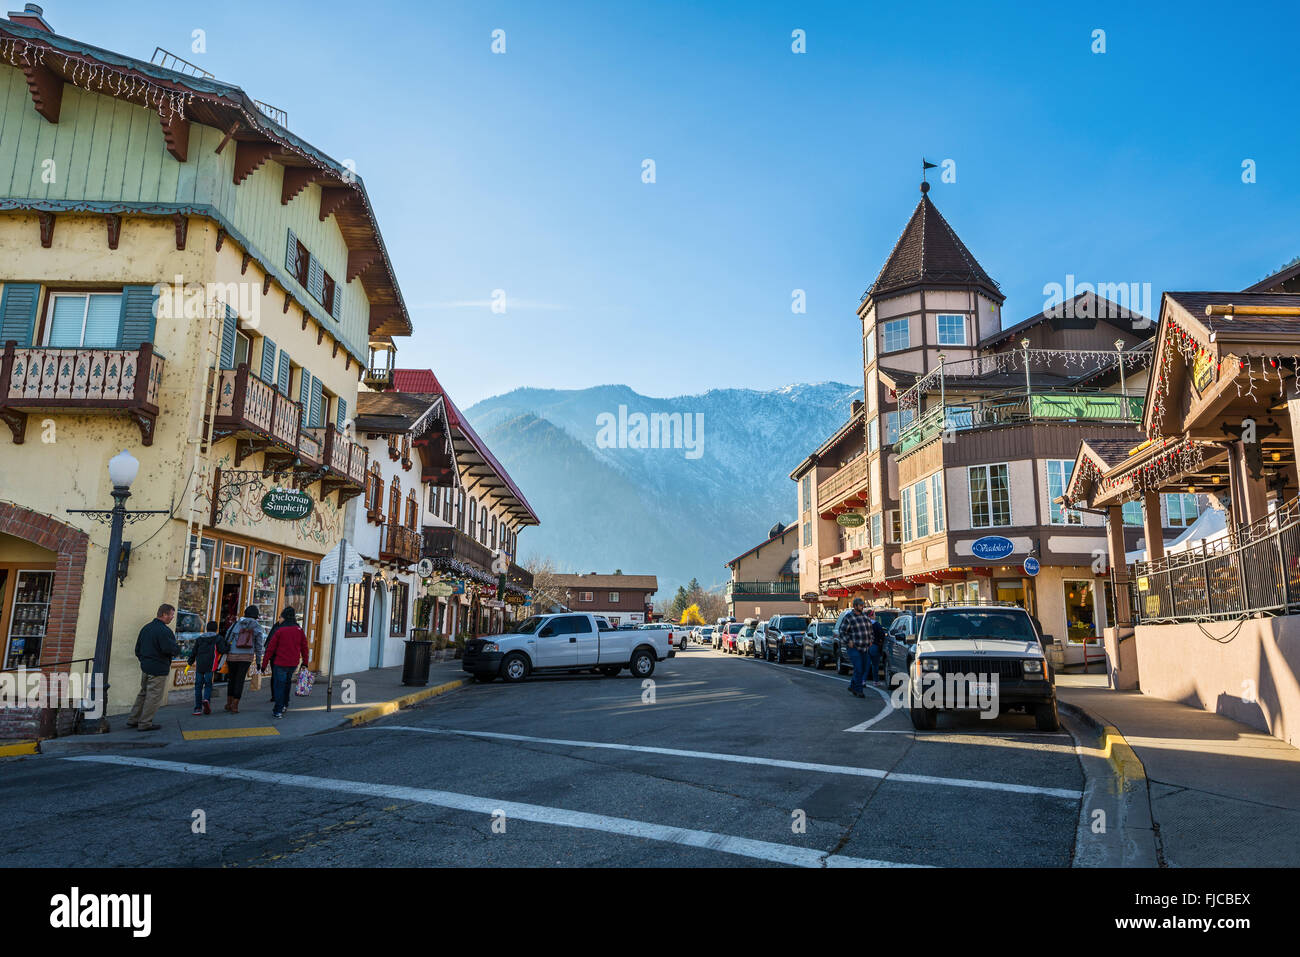 Leavenworth bayerischen Themen Stadt im US-Bundesstaat Washington. Stockfoto